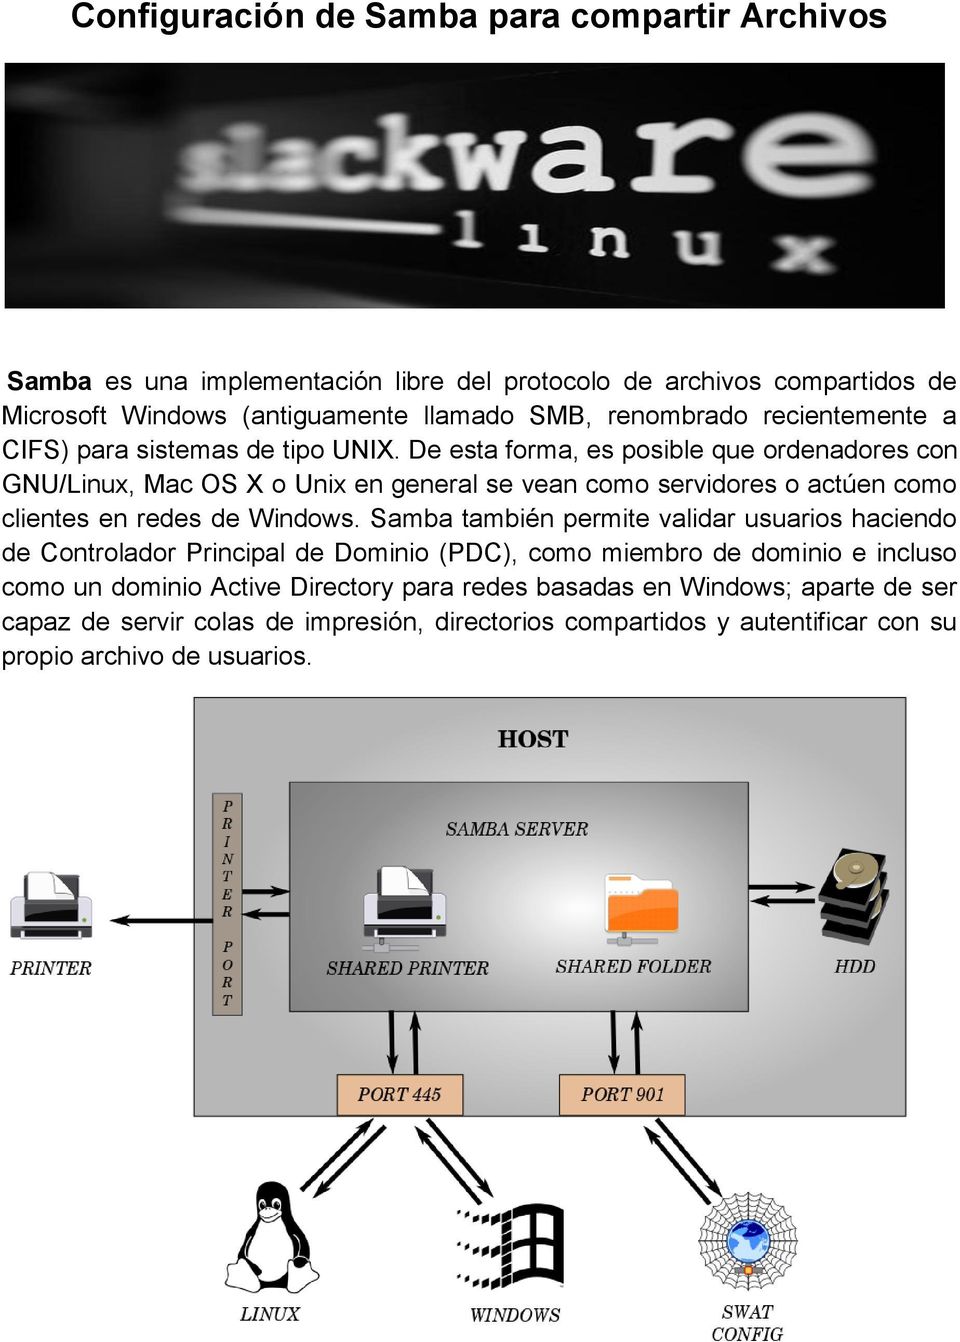 De esta forma, es posible que ordenadores con GNU/Linux, Mac OS X o Unix en general se vean como servidores o actúen como clientes en redes de Windows.